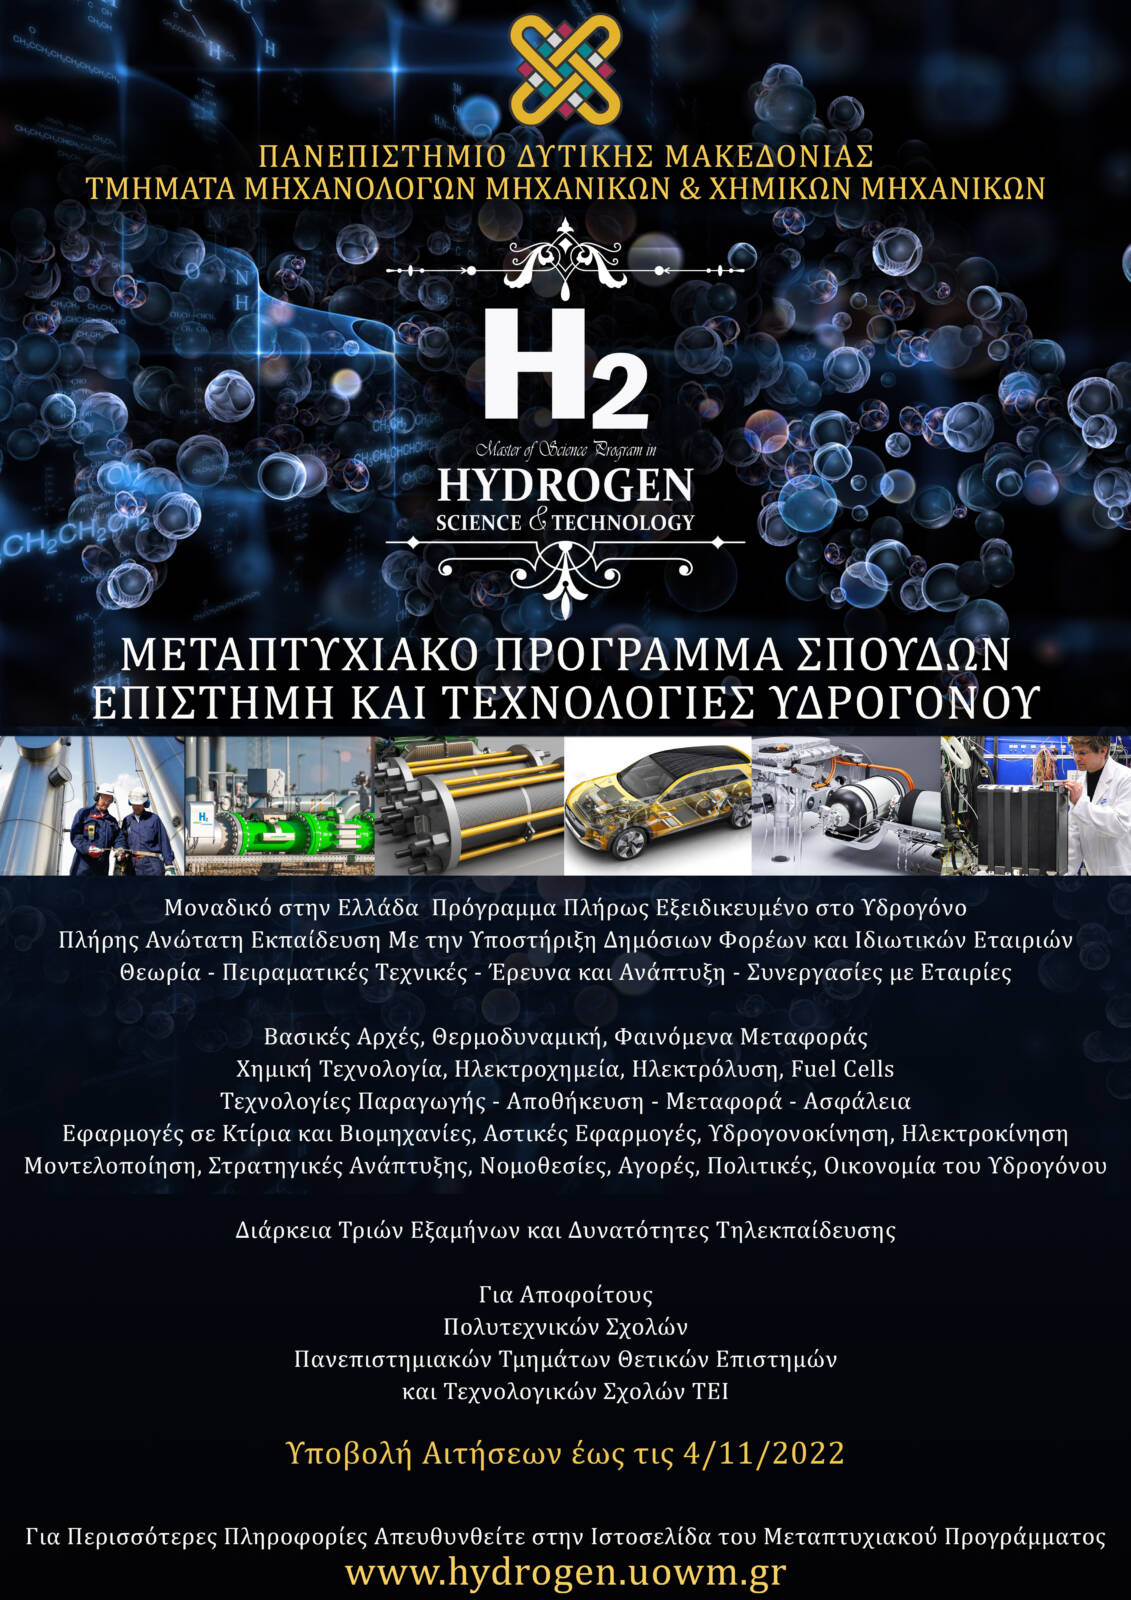 Τα Τμήματα Μηχανολόγων Μηχανικών και Χημικών Μηχανικών του Πανεπιστημίου Δυτικής Μακεδονίας διοργανώνουν για πρώτη χρονιά το Διατμηματικό Πρόγραμμα Μεταπτυχιακών Σπουδών (Δ.Π.Μ.Σ.) με τίτλο:  «Επιστήμη και Τεχνολογίες Υδρογόνου» (MSc in Hydrogen Science and Technology)